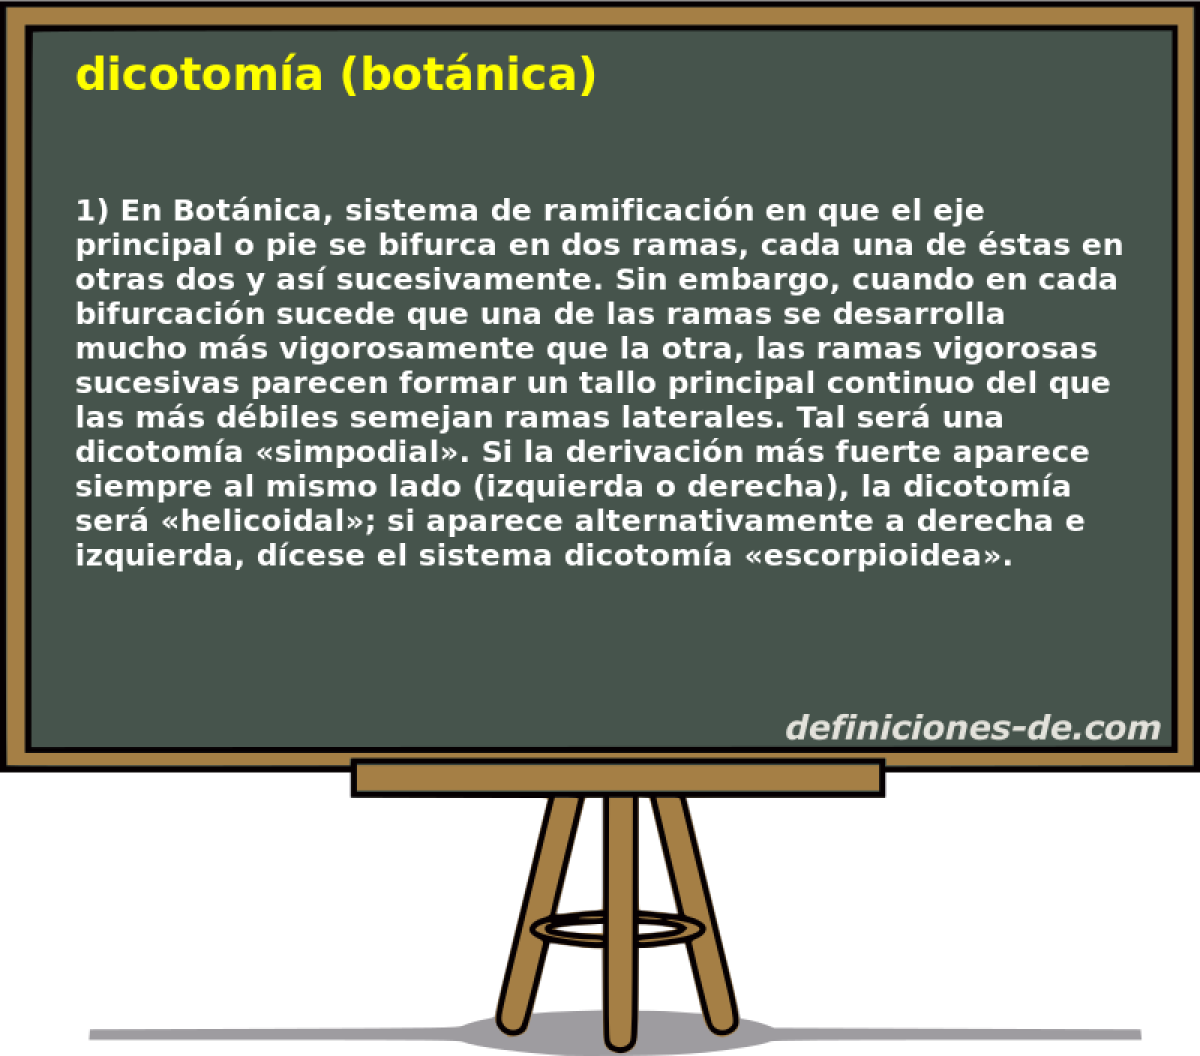 dicotoma (botnica) 